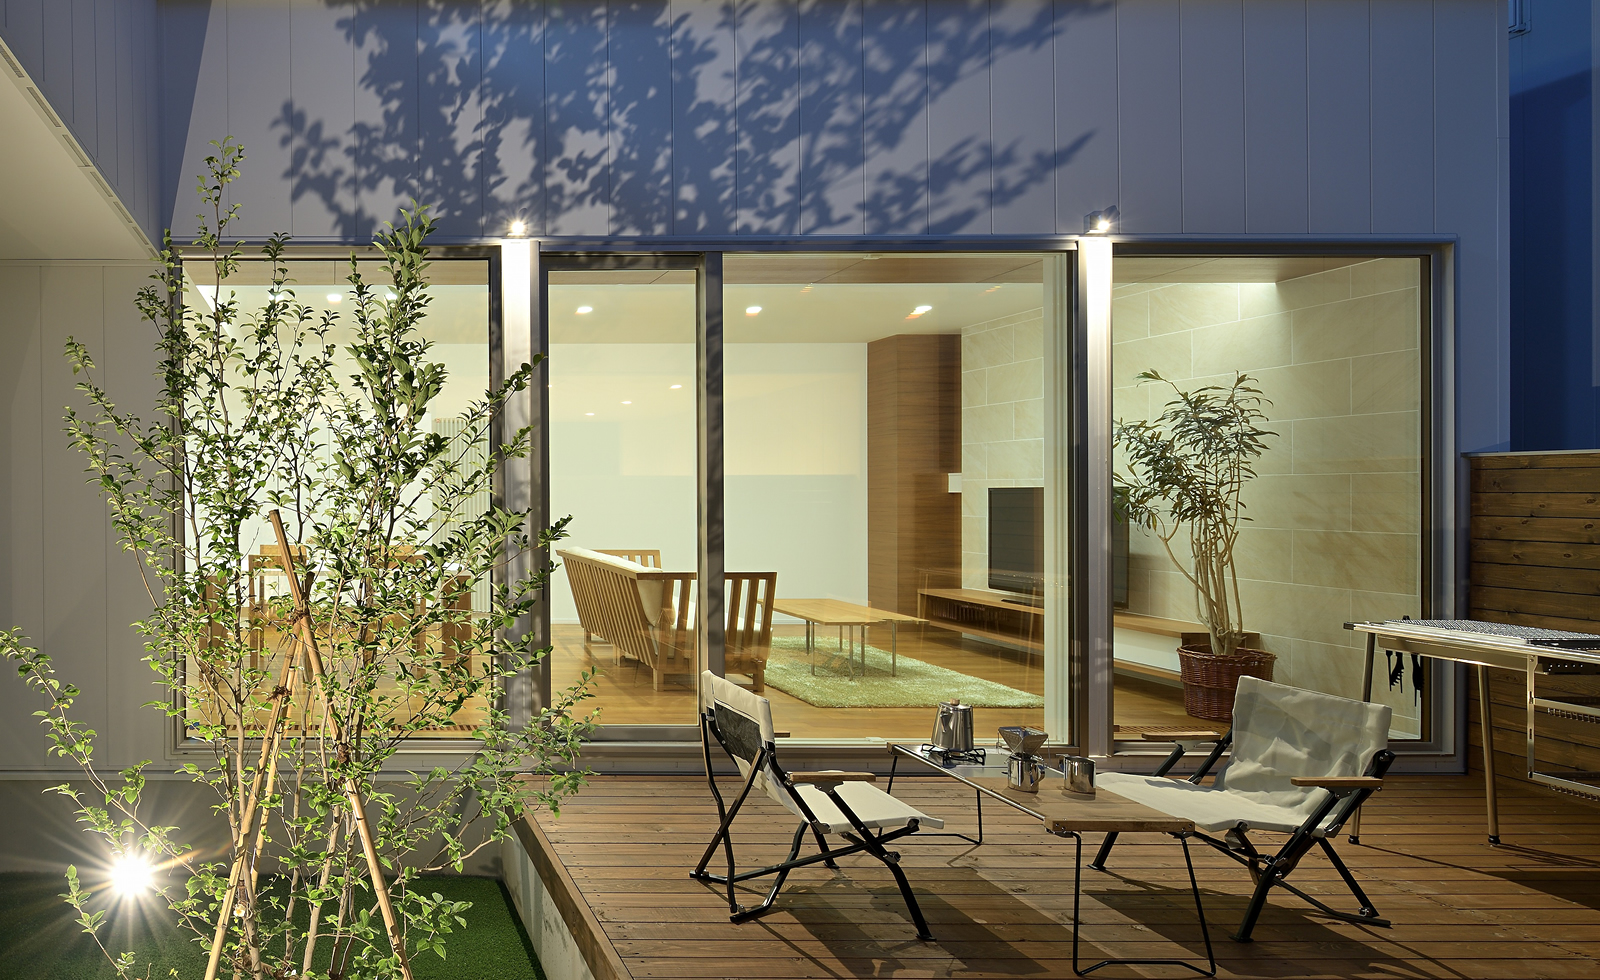 札幌 江別 北広島の新築 注文住宅 スカイハウス モダンなデザインの家